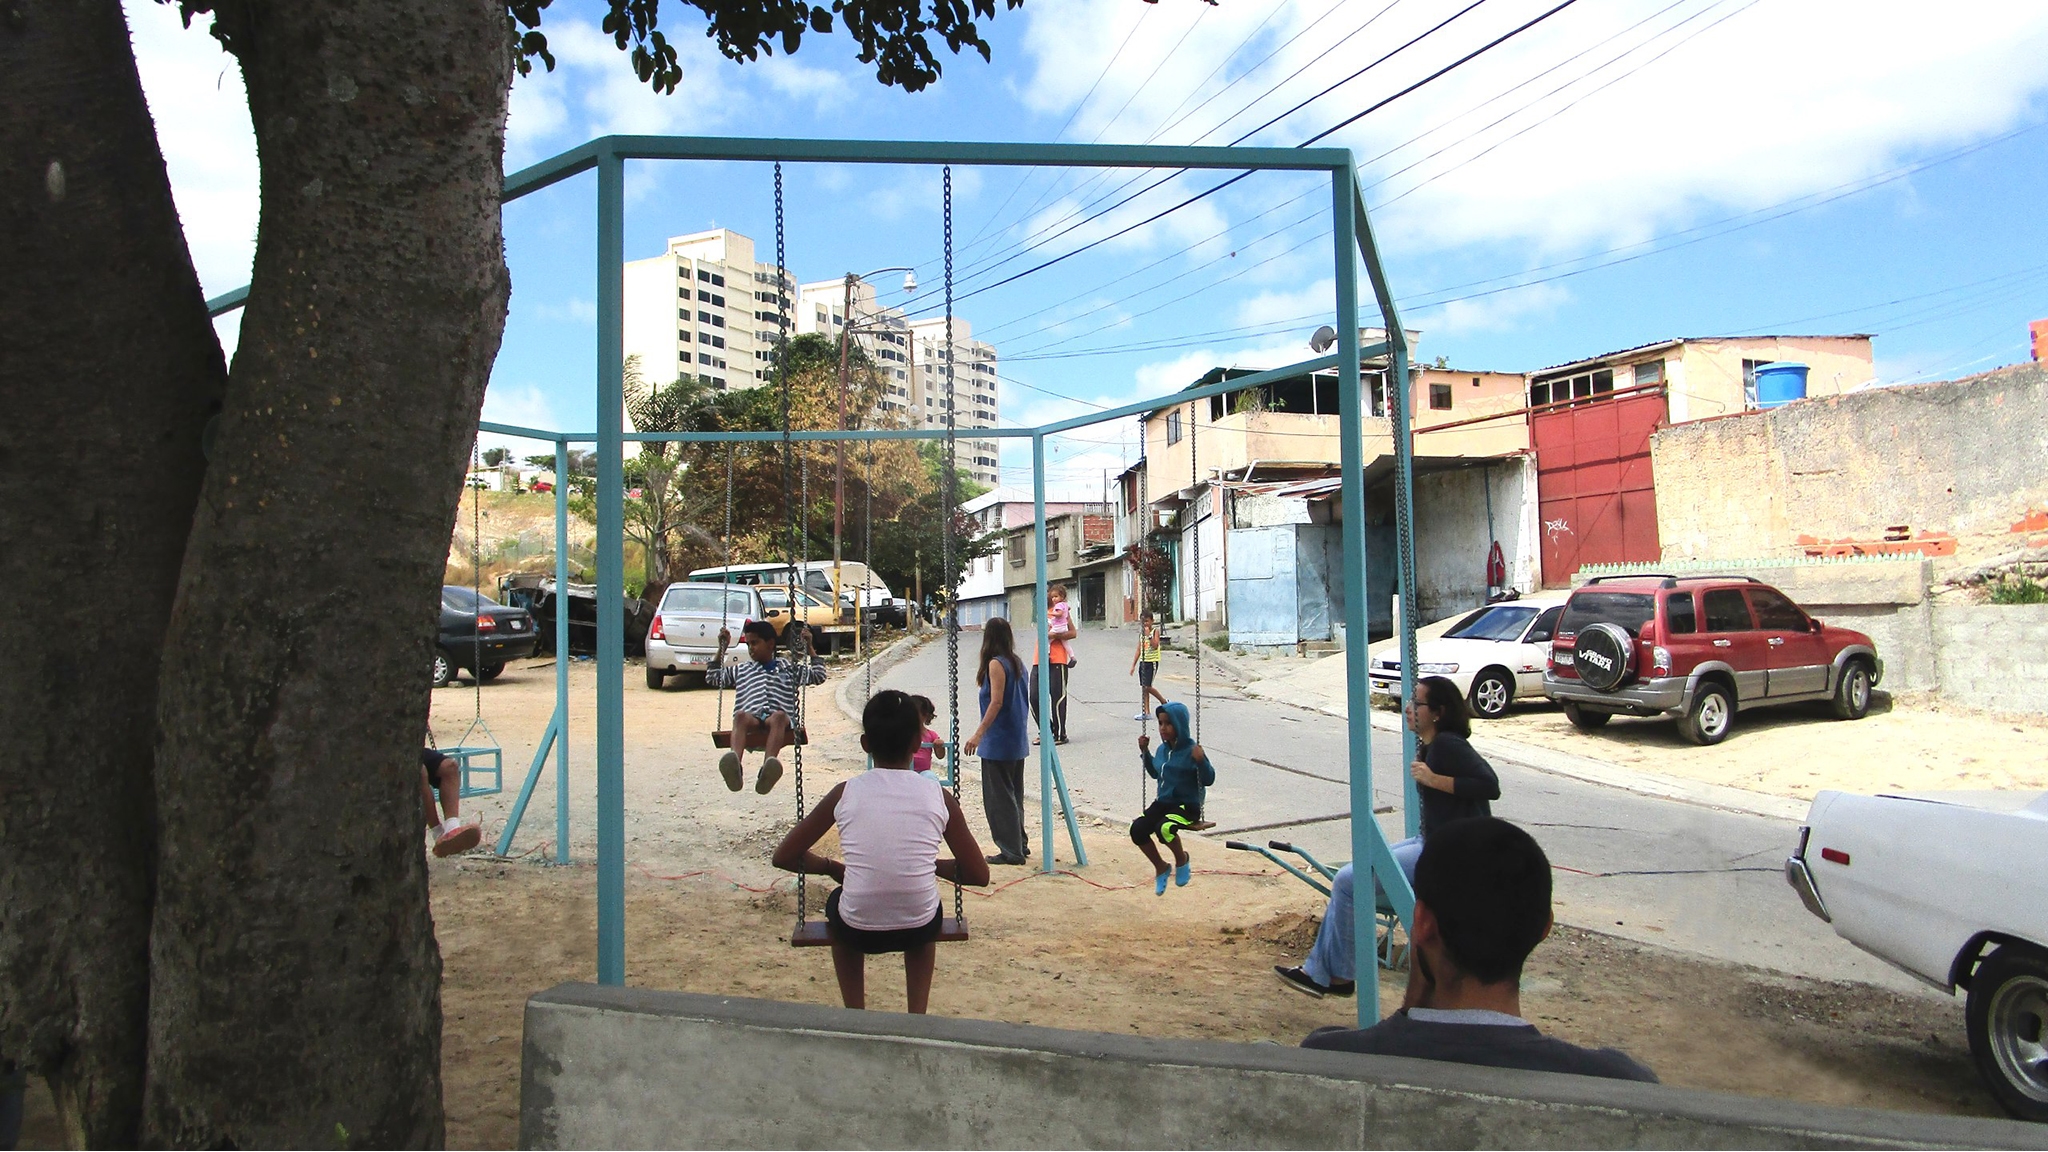  La Palomera: transformación de un barrio autoconstruido